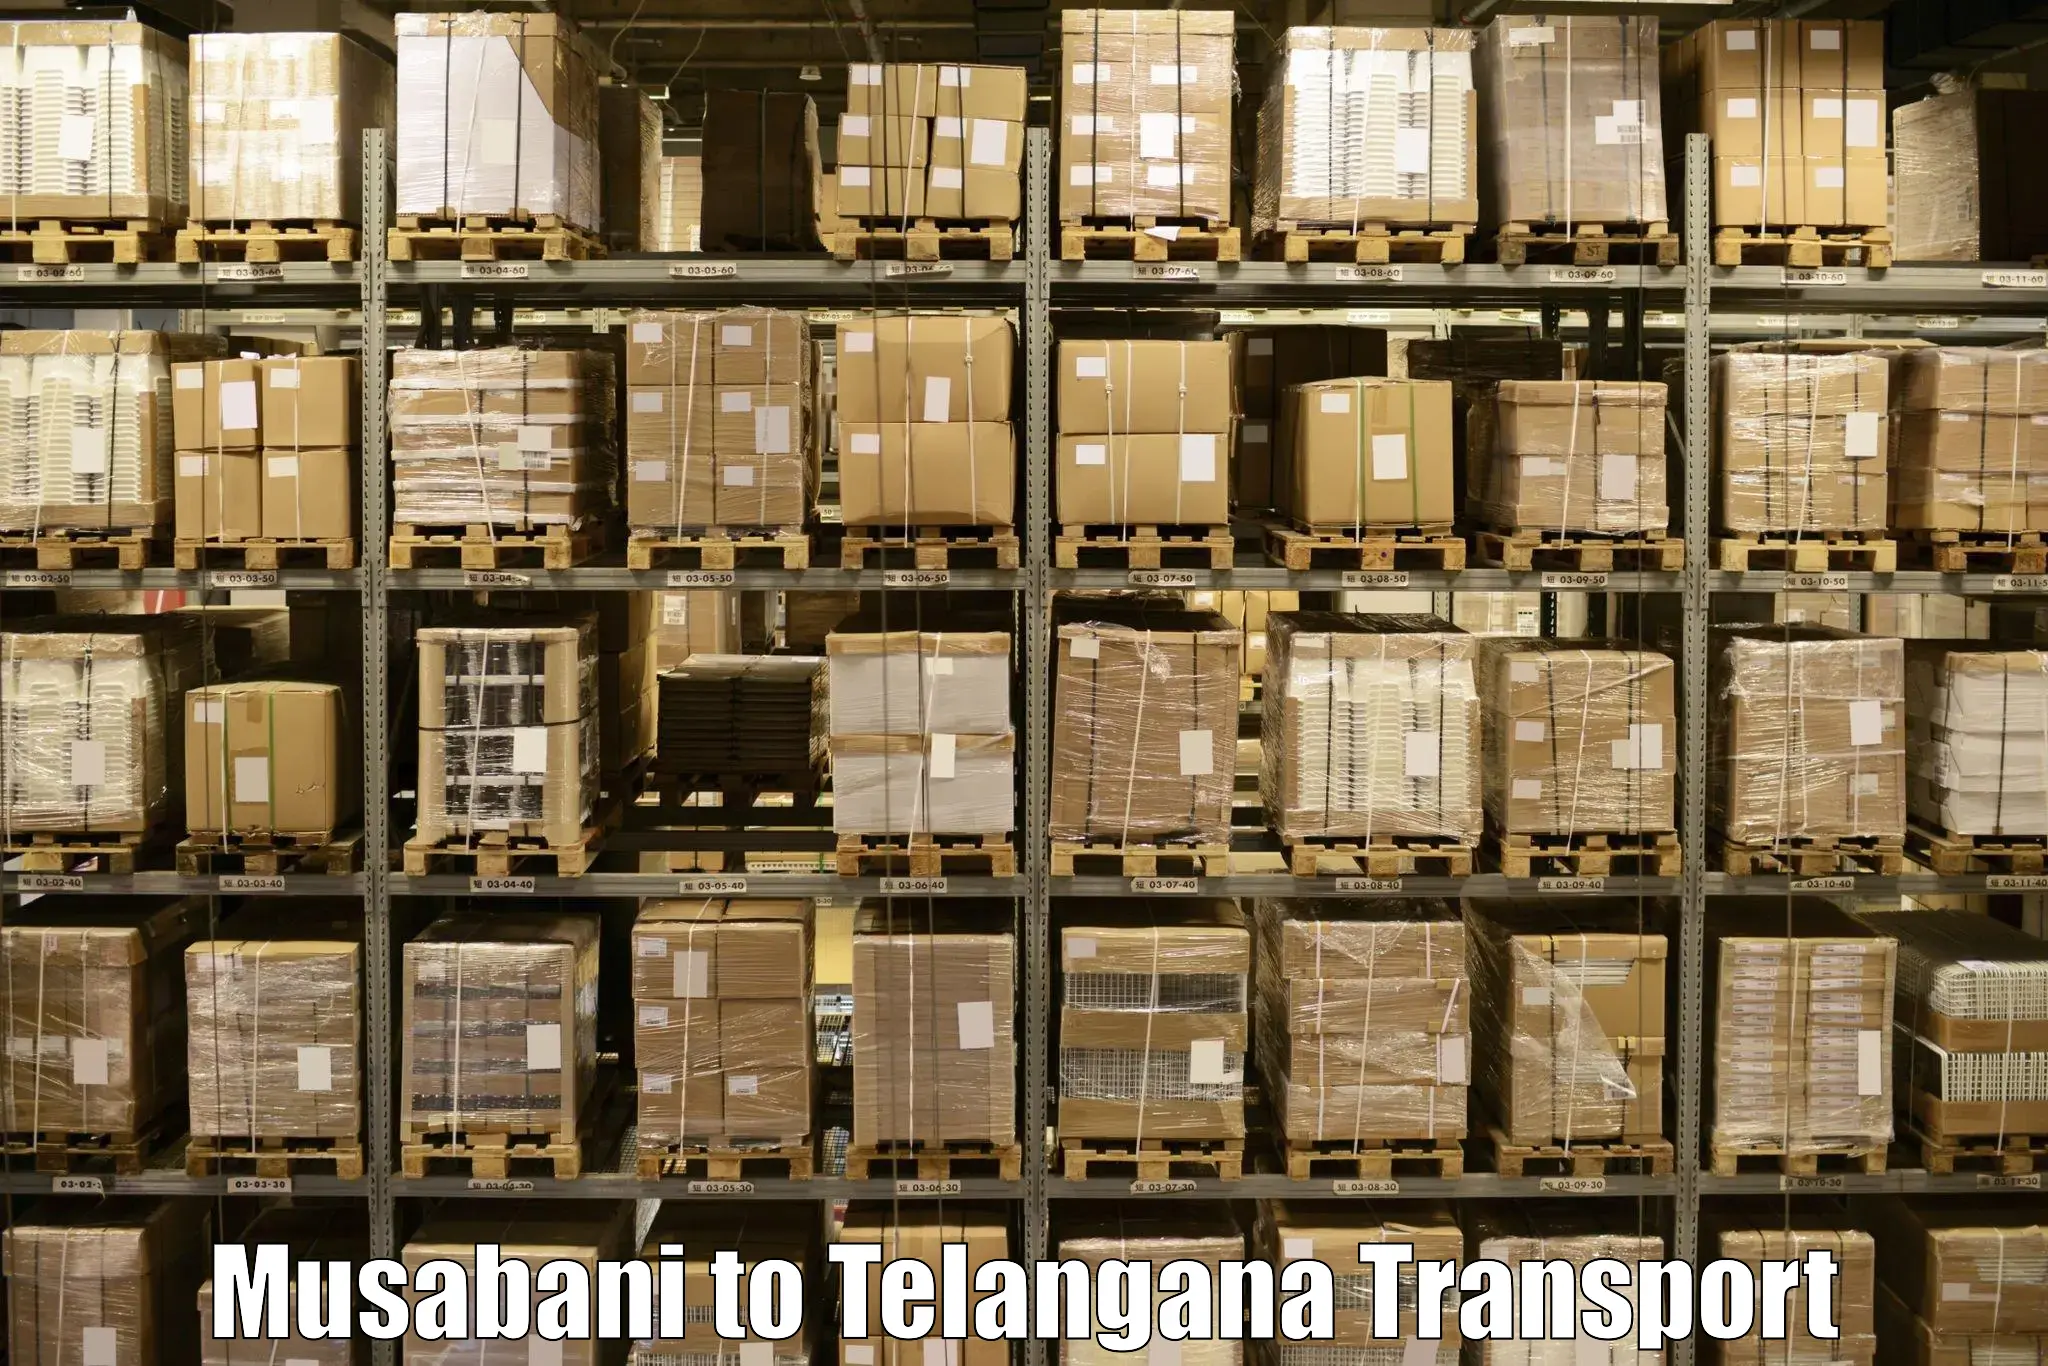 Air cargo transport services Musabani to Telangana